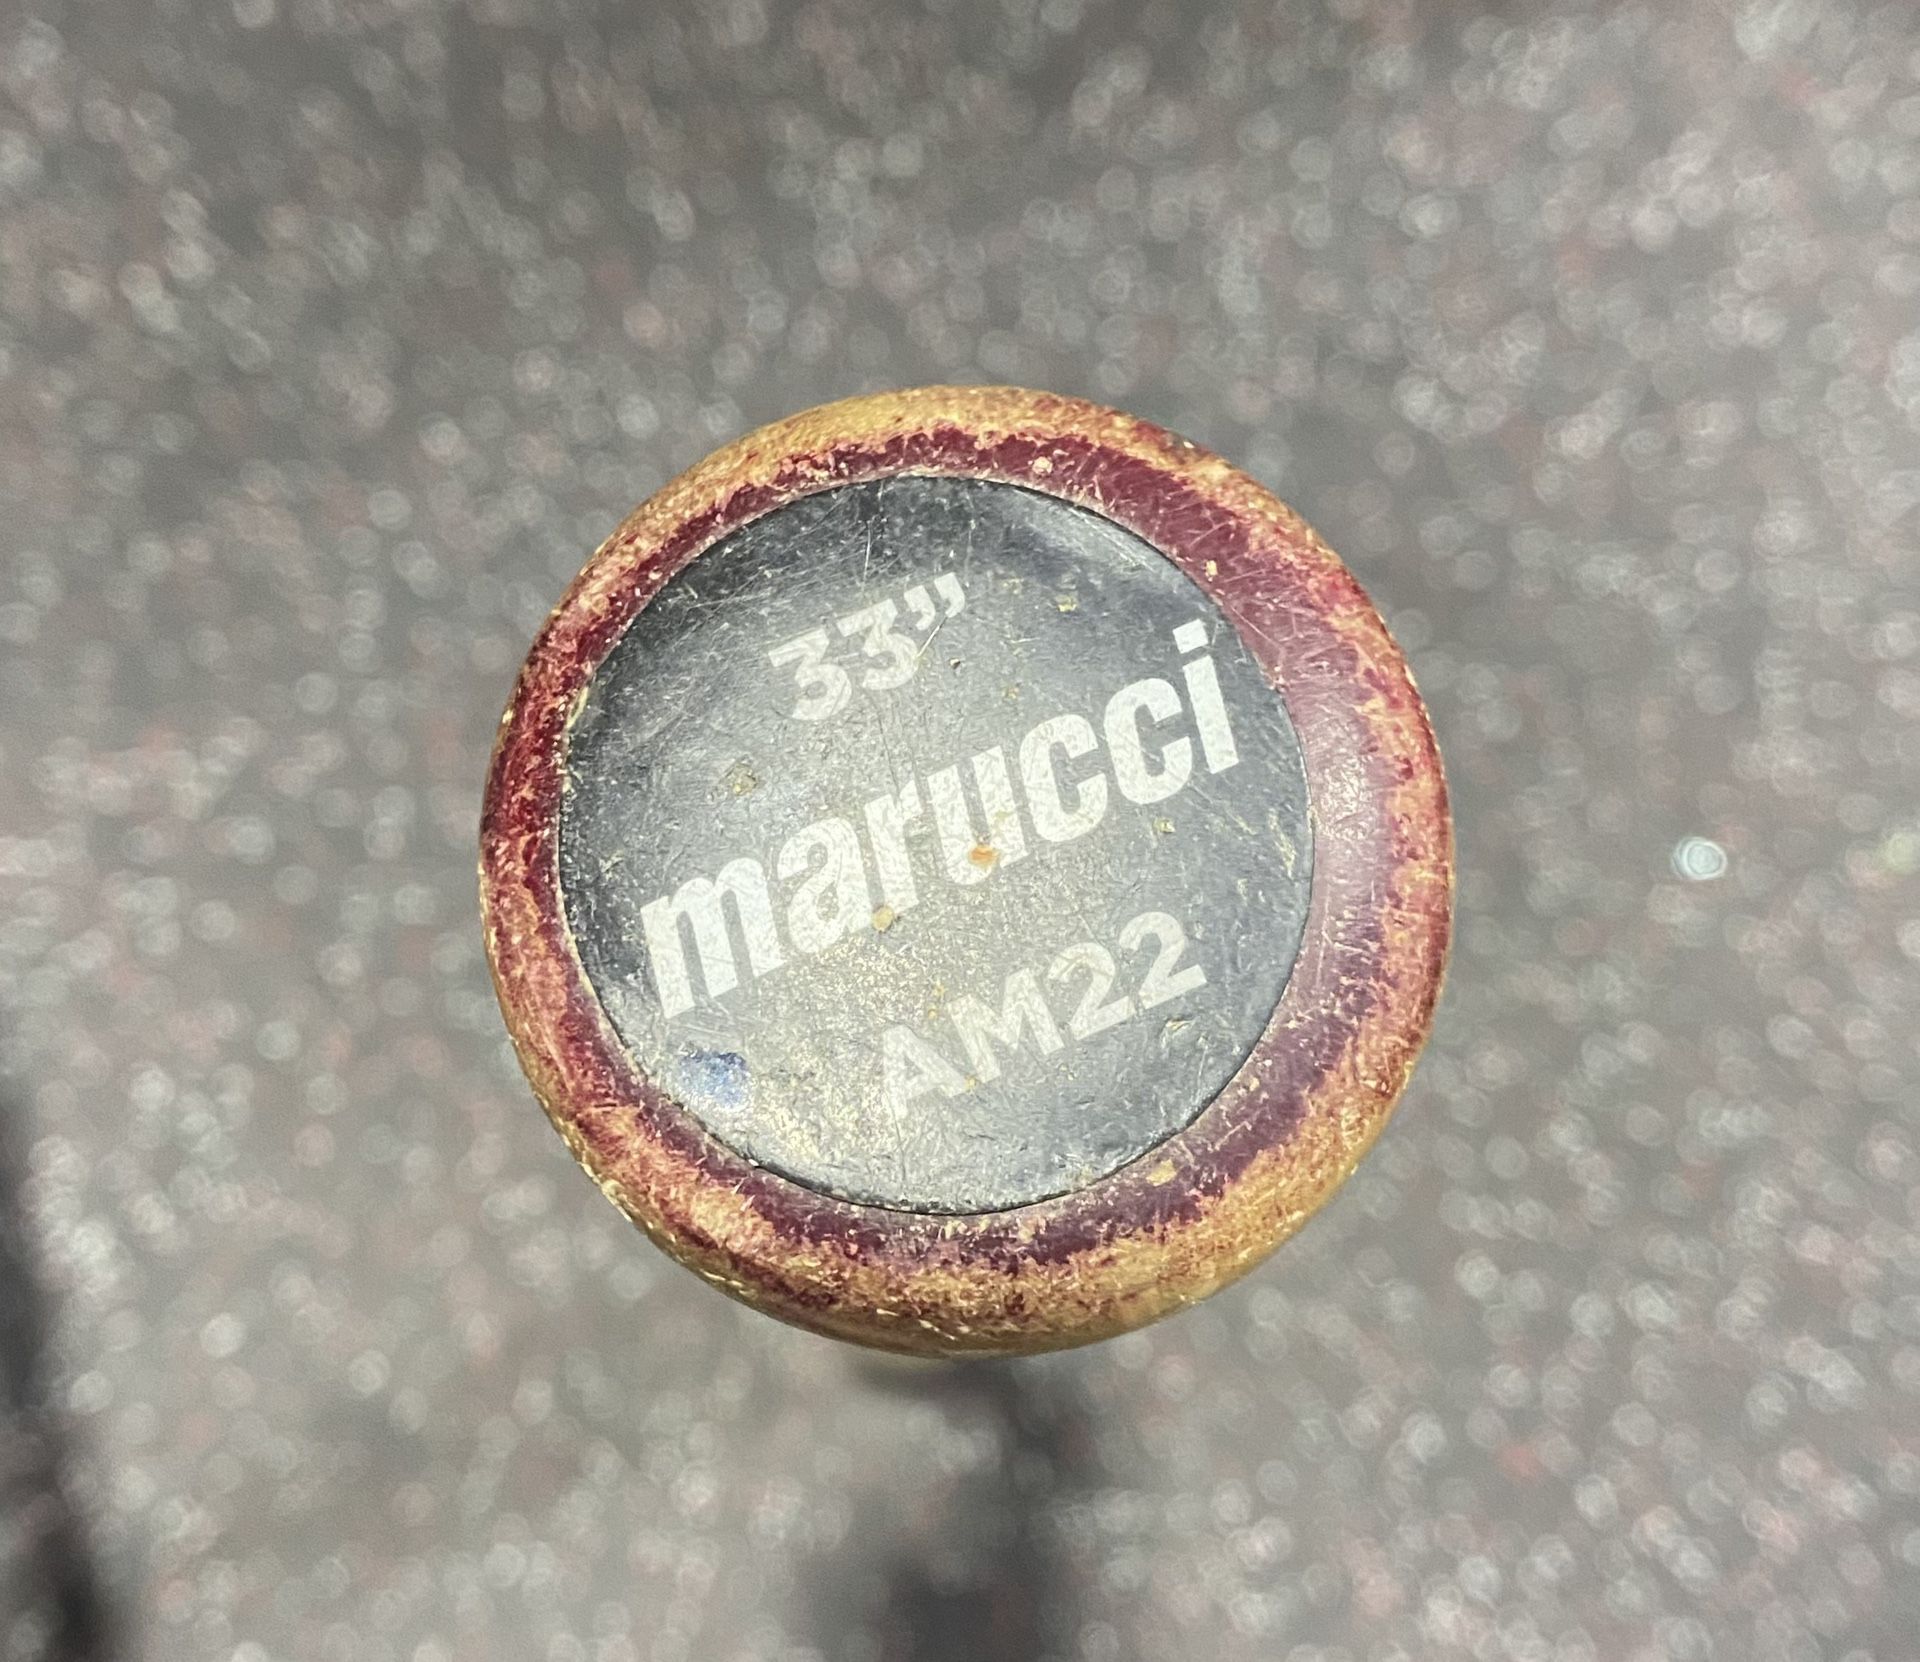 33” Marrucci AM22 Wood Bat